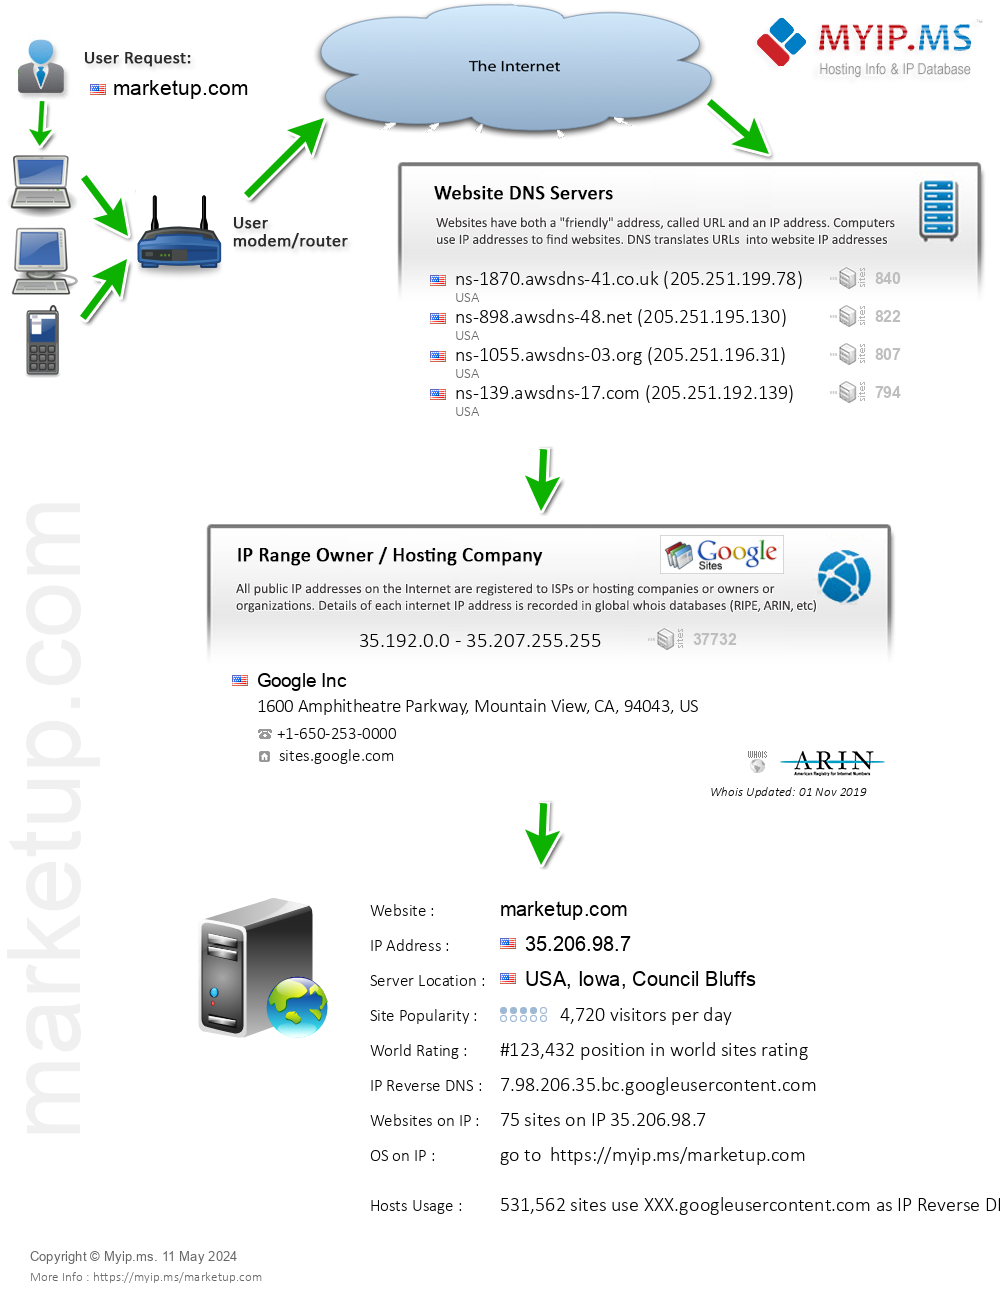 Marketup.com - Website Hosting Visual IP Diagram